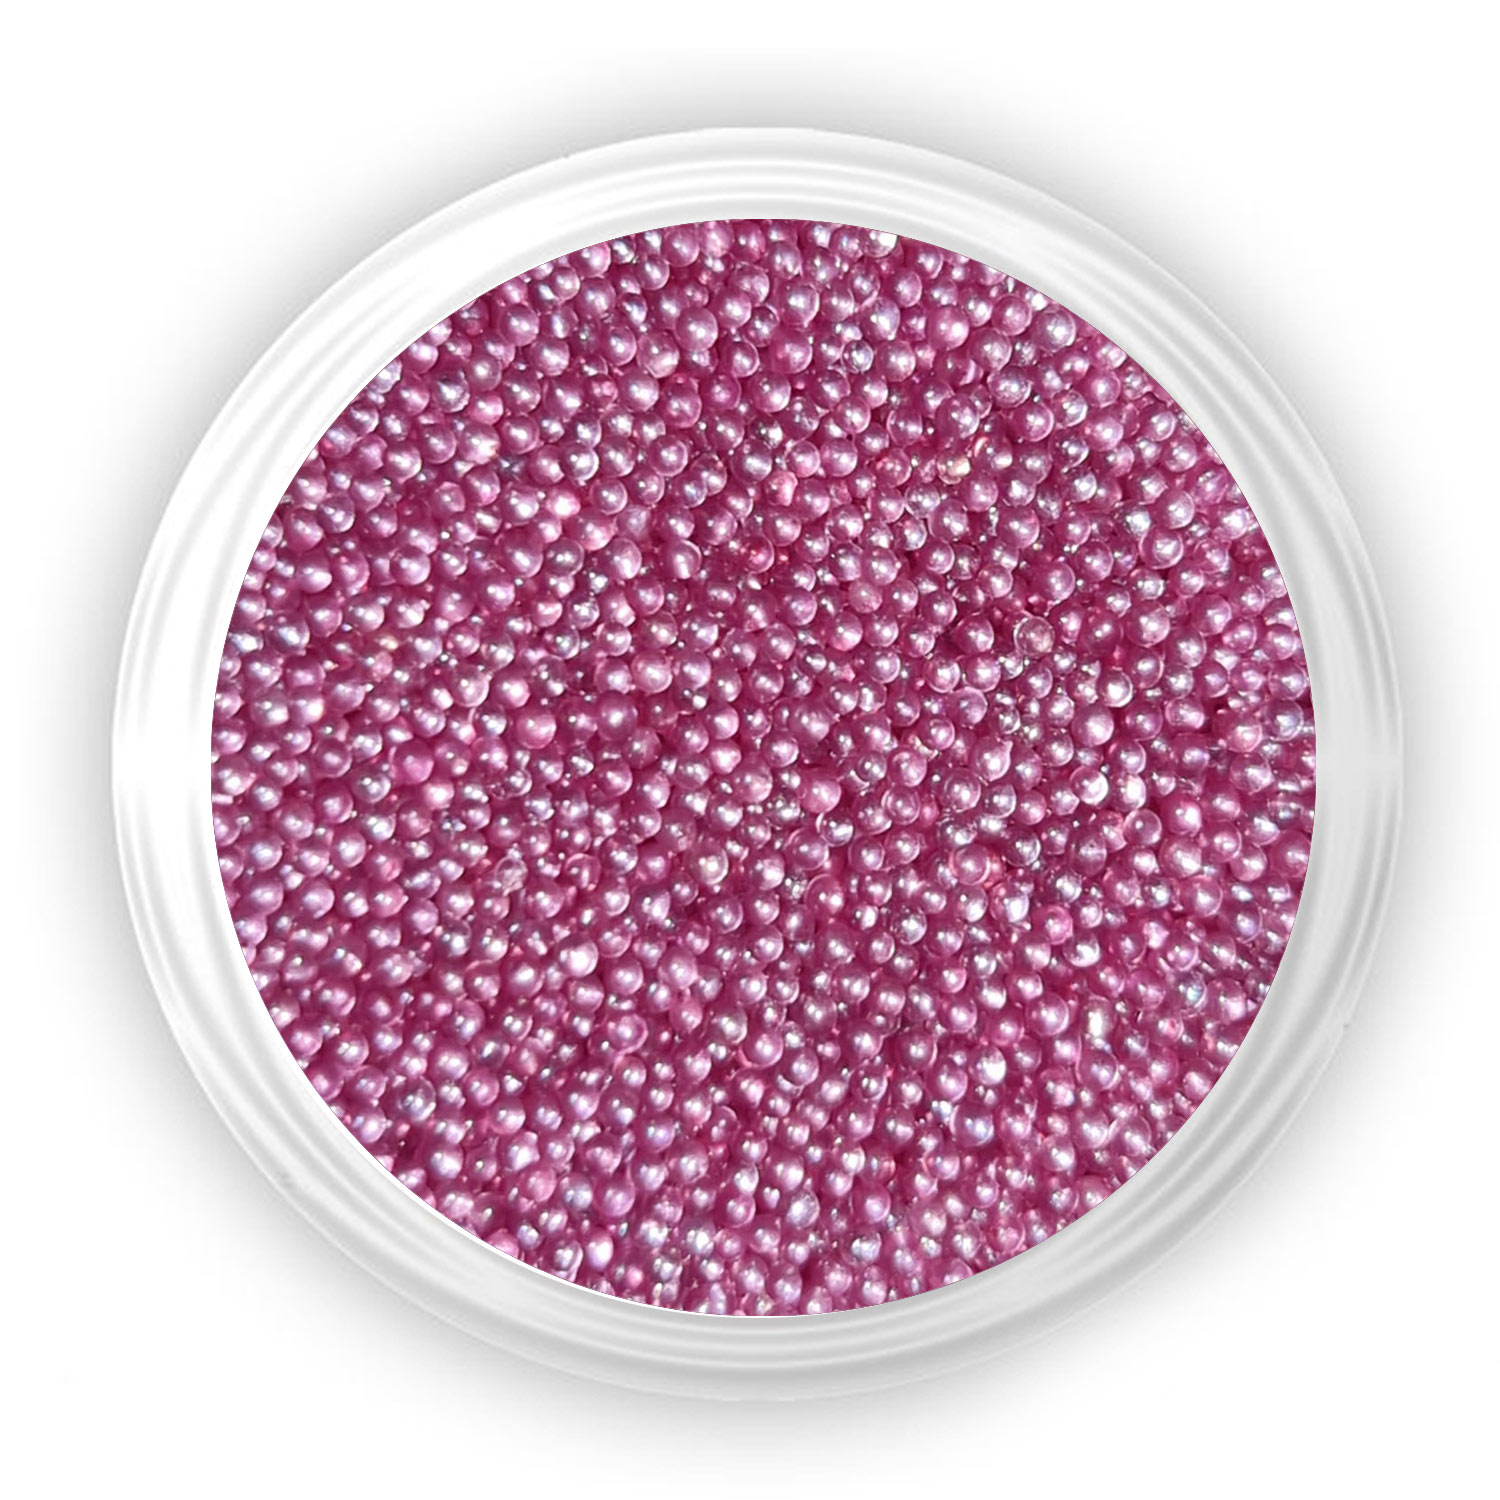 Caviar Χαβιάρι για την διακόσμηση των νυχιών διαφανο ροζ 26